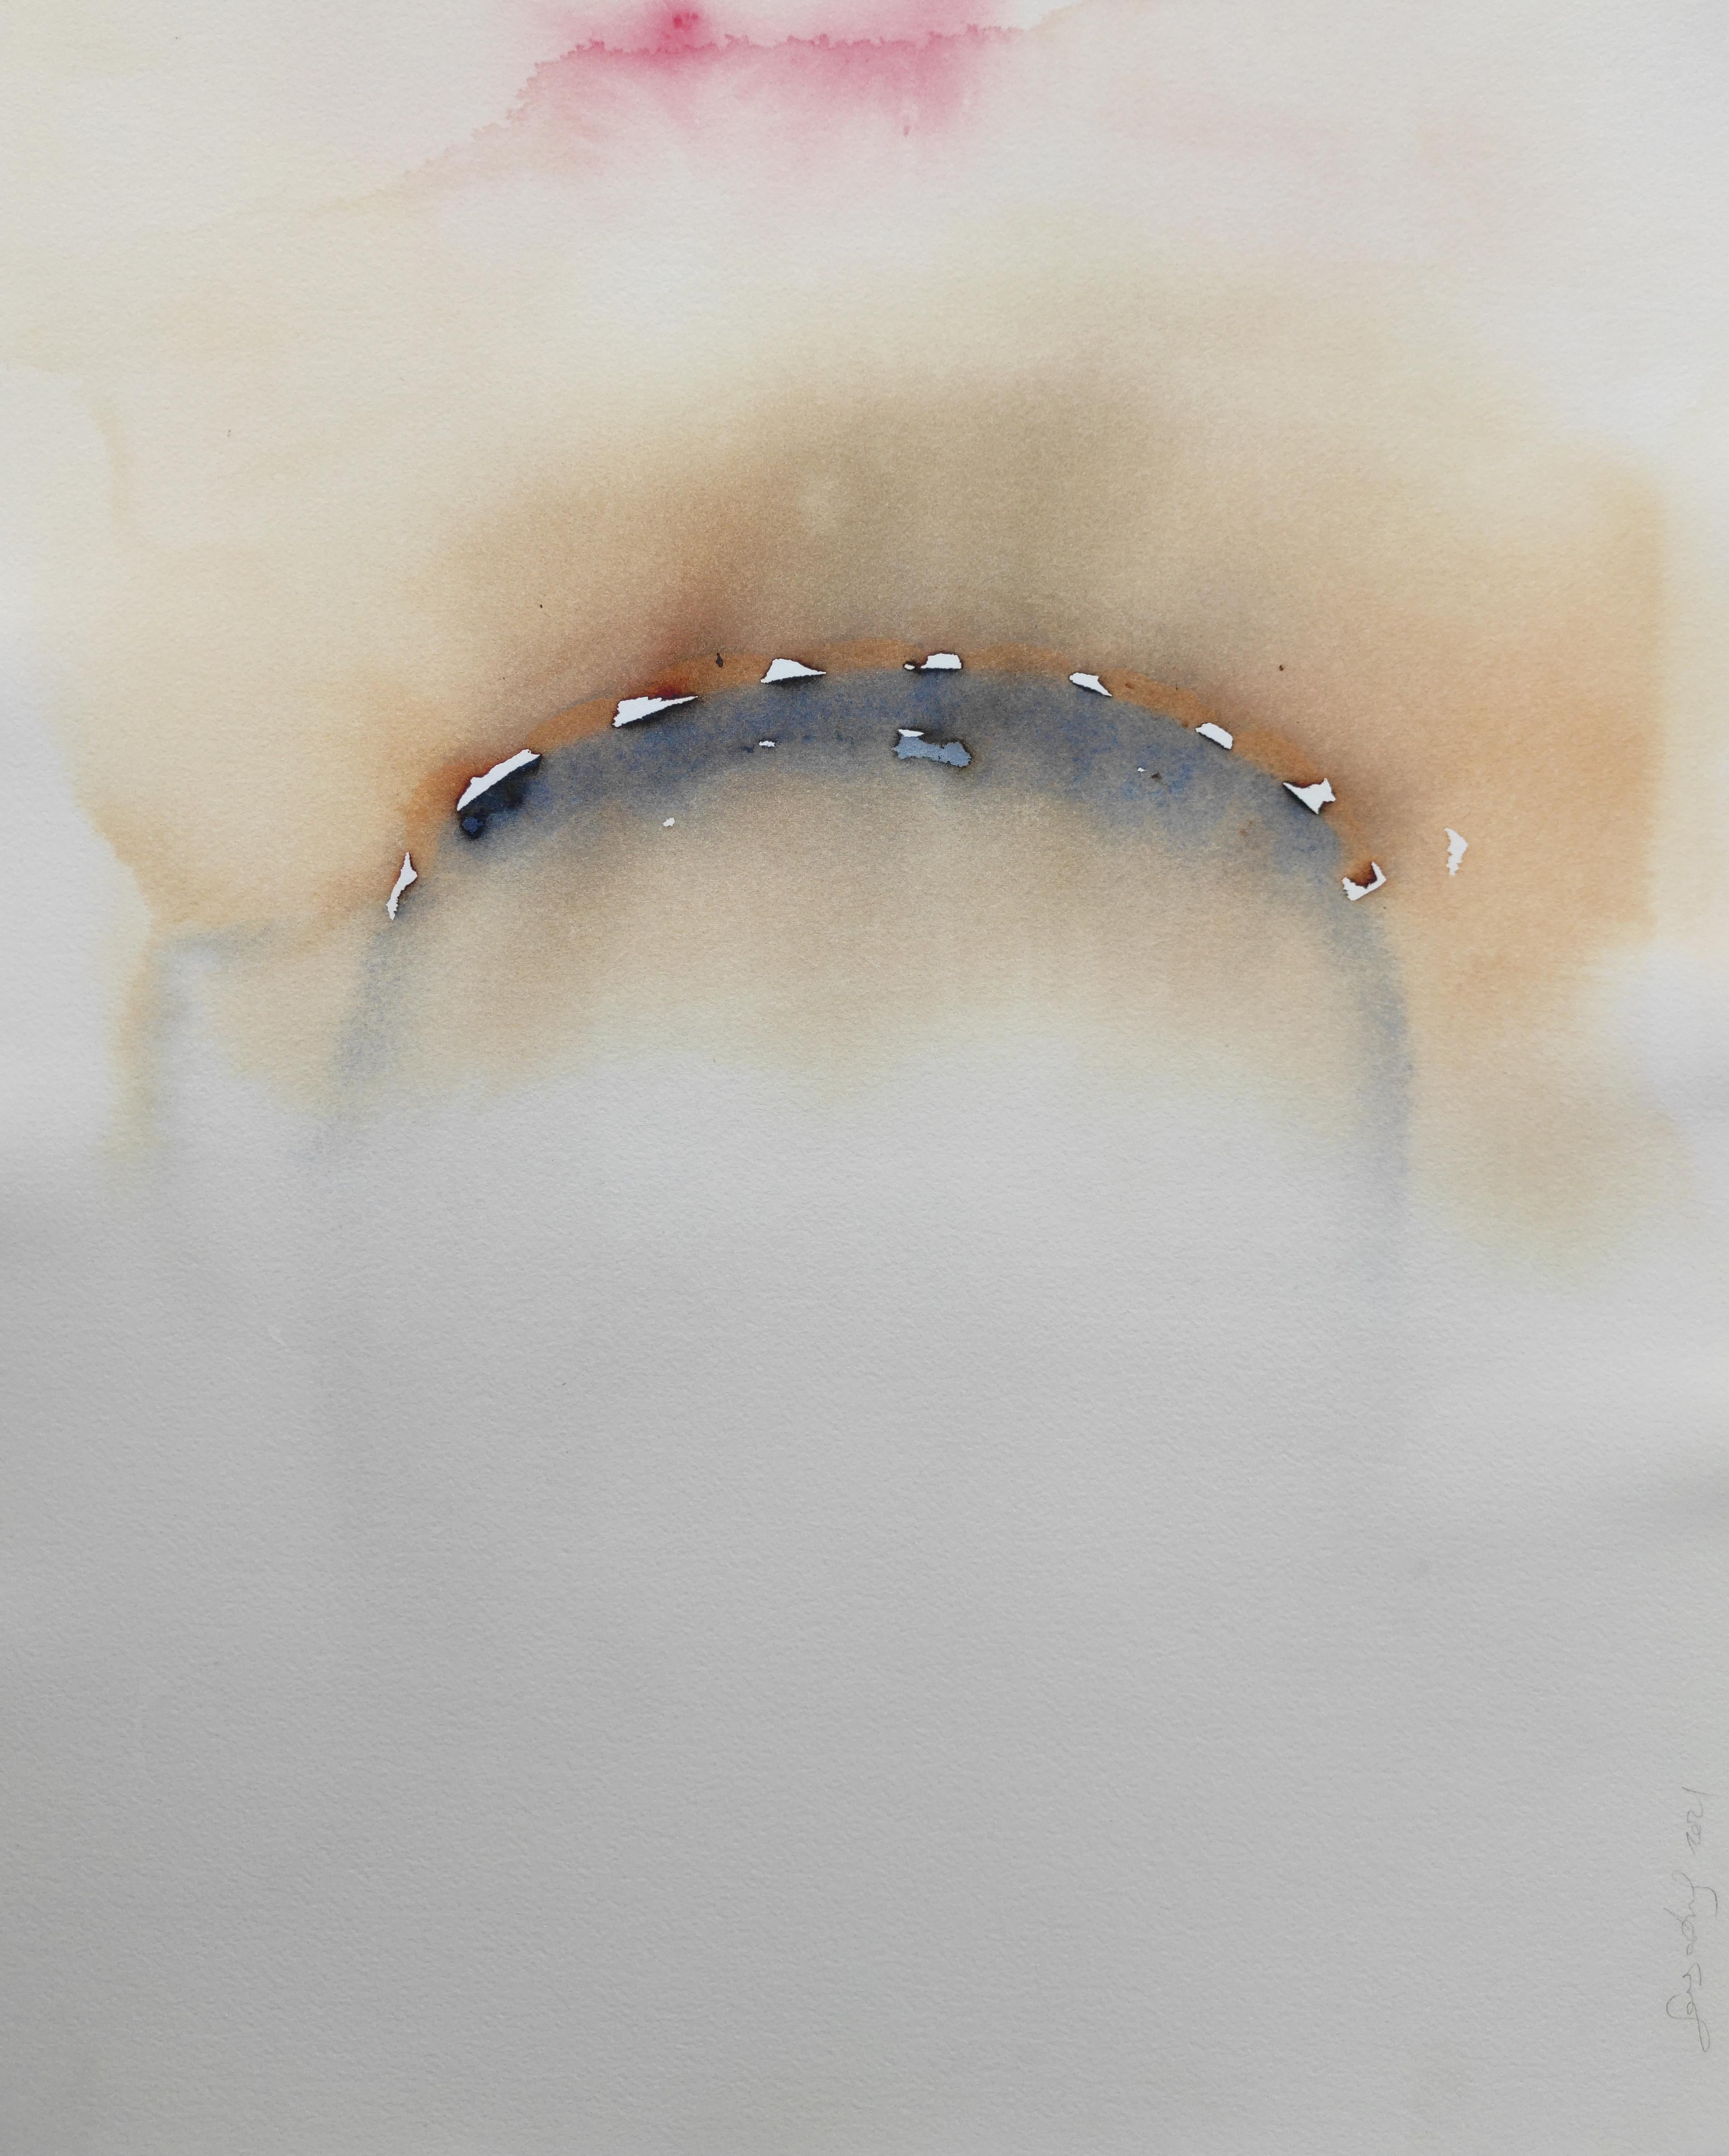 "Ohne Titel wp18" Abstrakte Malerei 22" x 18" Zoll von Gayatri Gamuz

Aquarell auf Archivpapier

Auf der Suche nach Stille, auf der Suche nach dem Selbst.
Ihre Arbeit entspringt der inneren Stille und dem Verständnis für die Einheit aller. Die